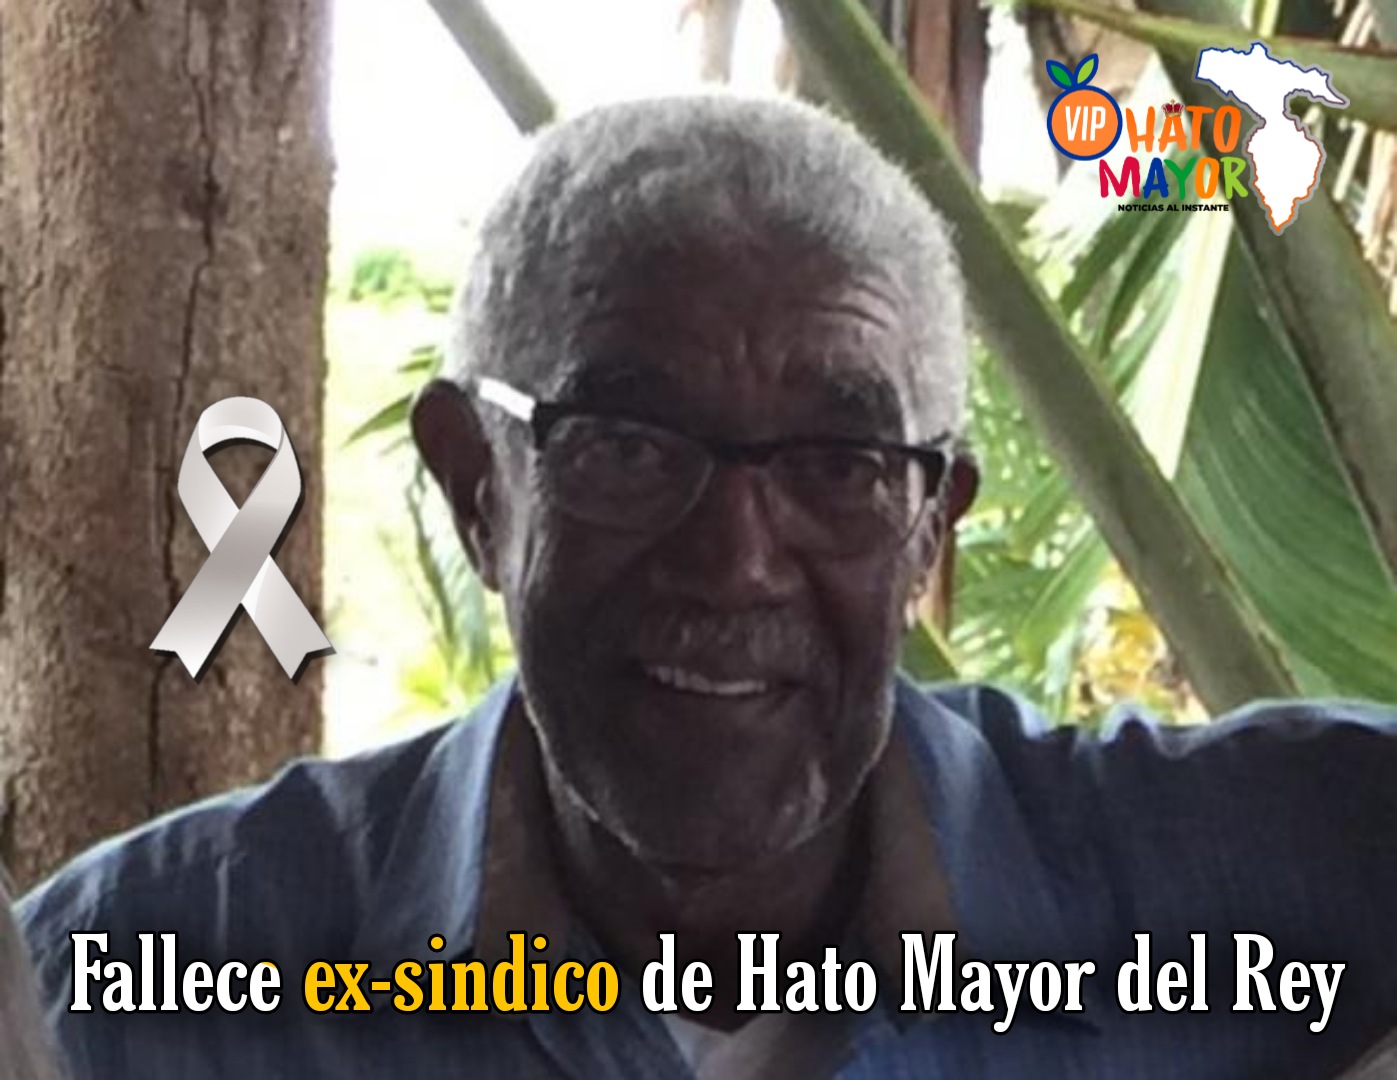 Fallece Victor Manuel ex-sindico de Hato Mayor del Rey